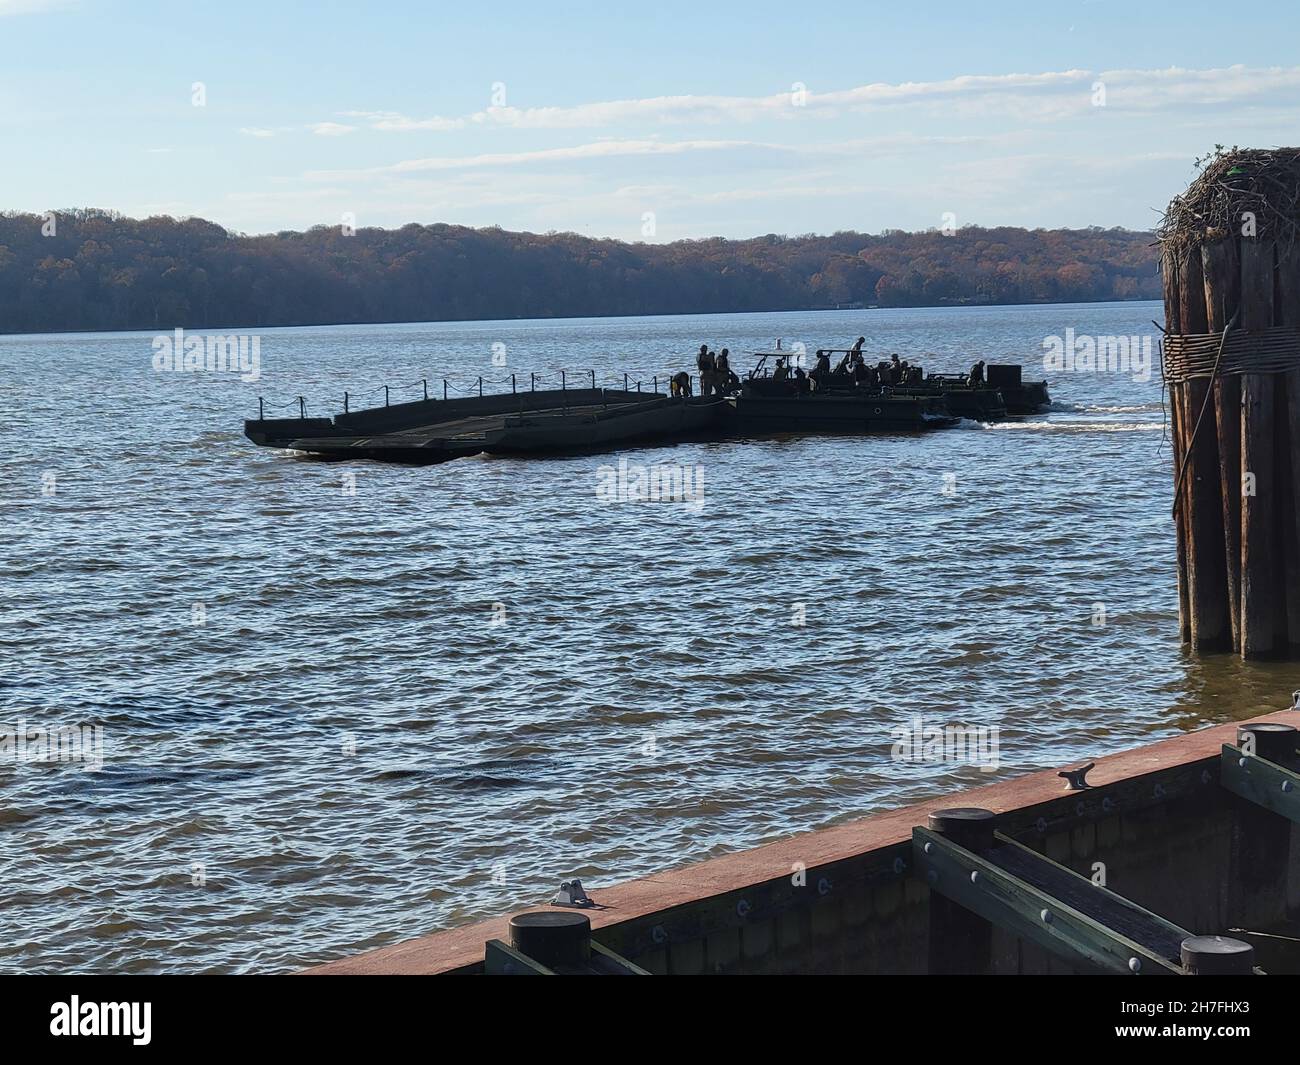 Die Multi-Role Bridge Company von 299th arbeitet an der Fertigstellung eines Floßflosses mit fünf Floßen in Fort Belvoir, um die Leistungsfähigkeit am 18. November zu demonstrieren.Foto von Maj. William C. Allred, 412th TEC PAO Stockfoto